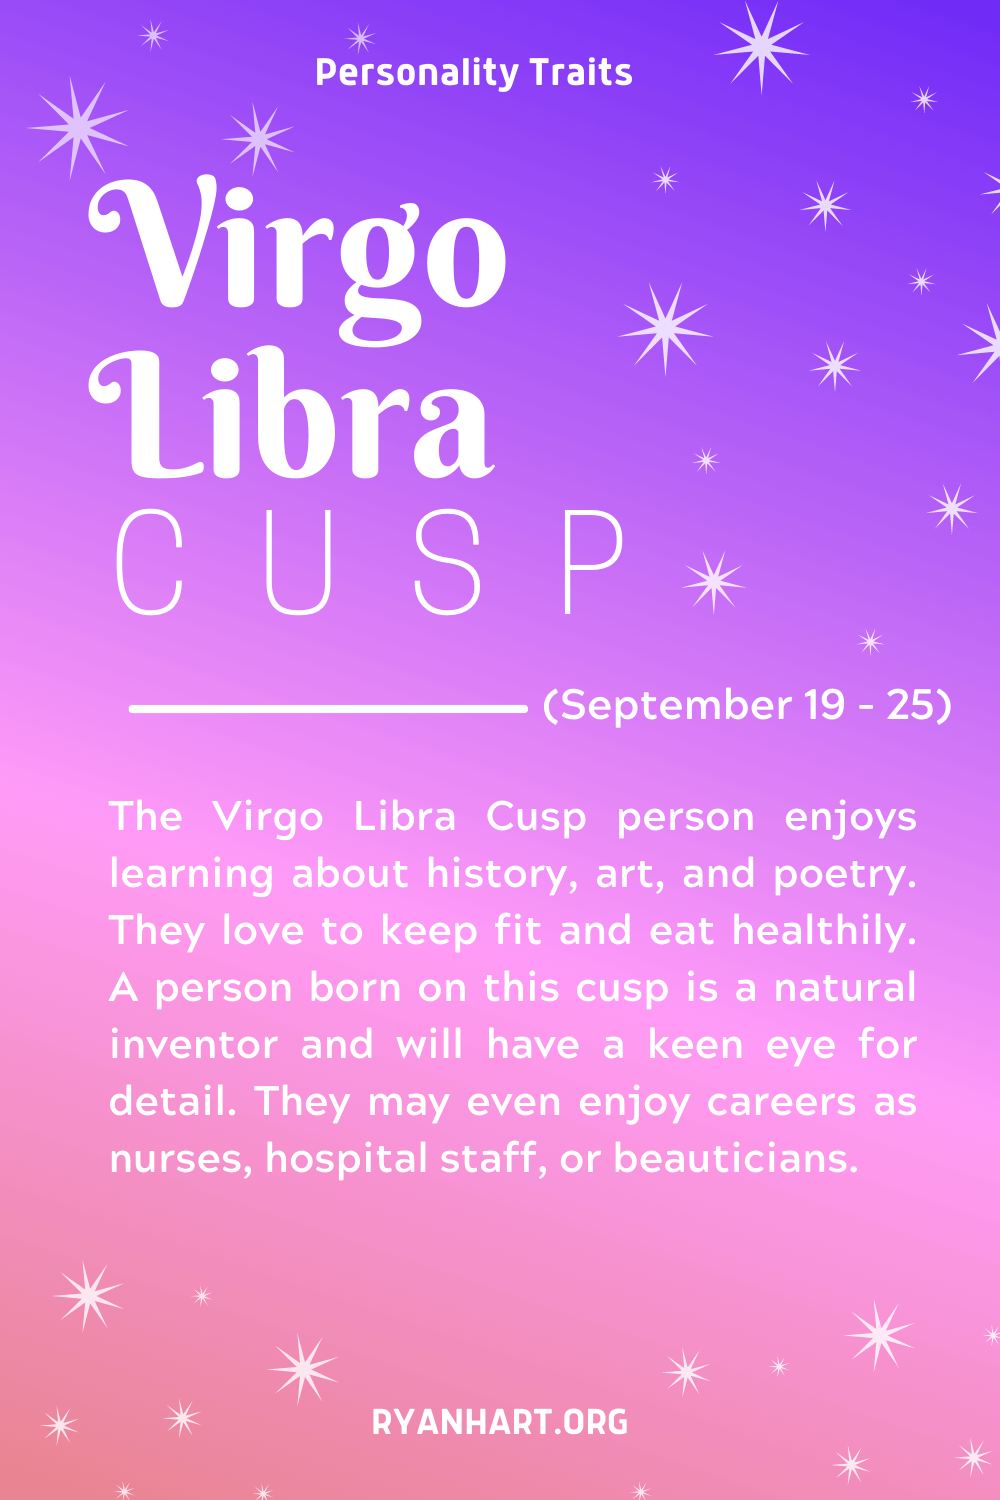 Virgo Libra Cusp Description